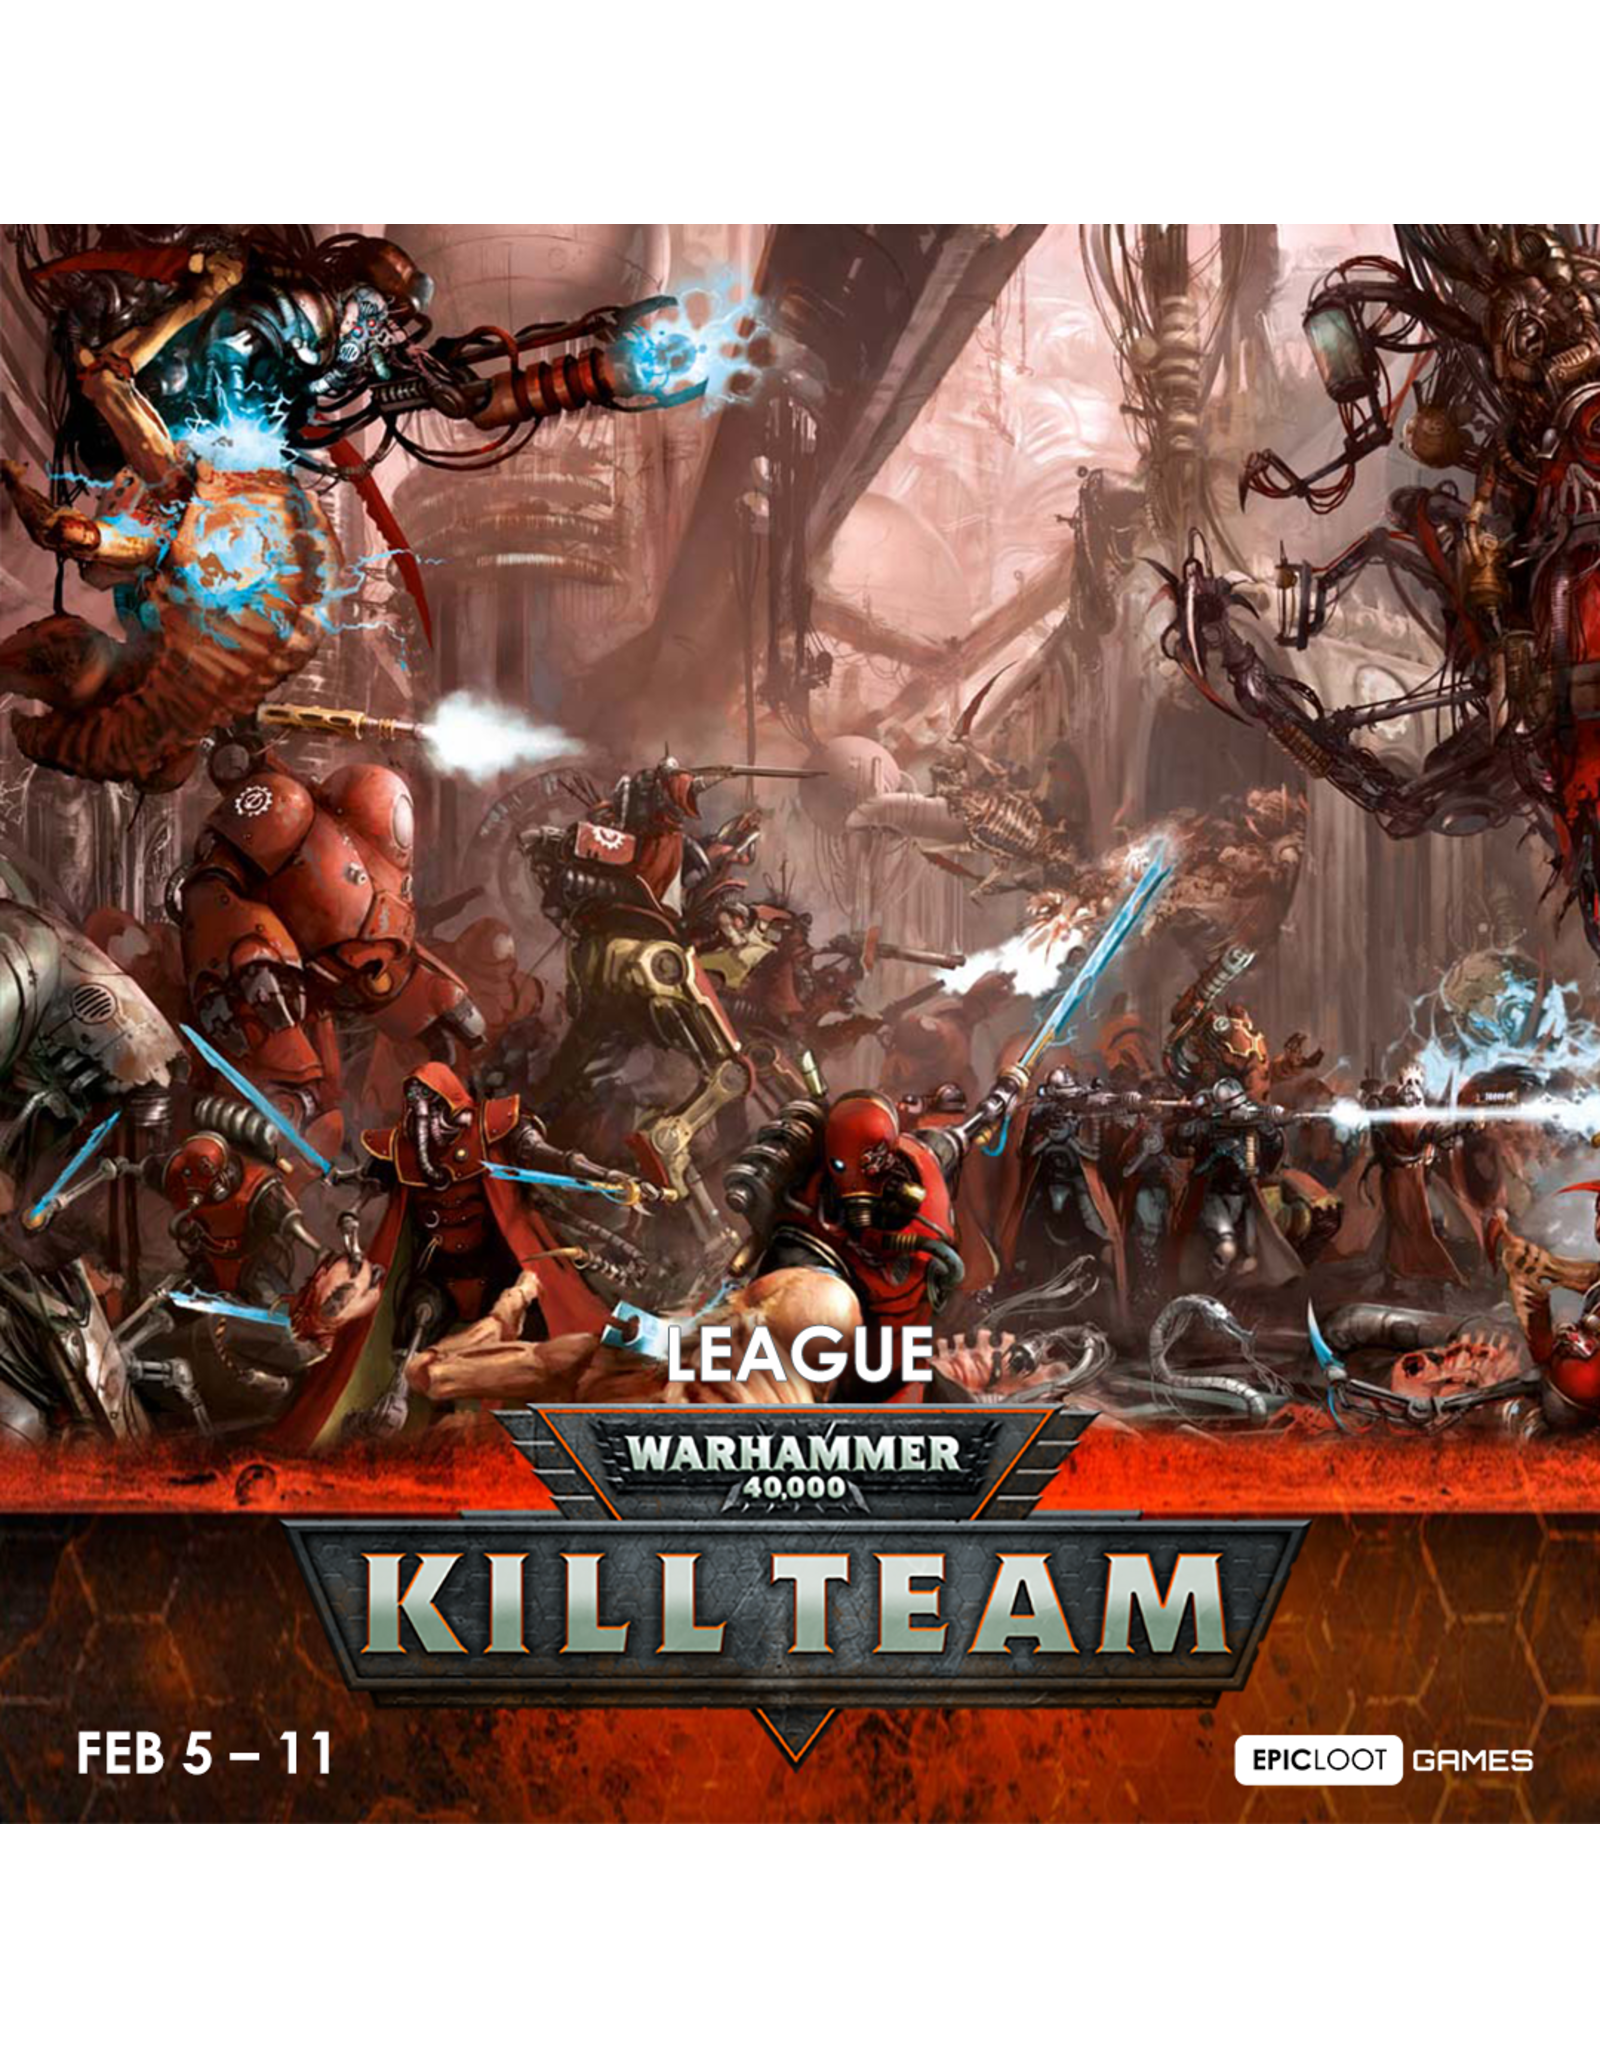 Tues Feb 5 - Mar 11 Kill Team League